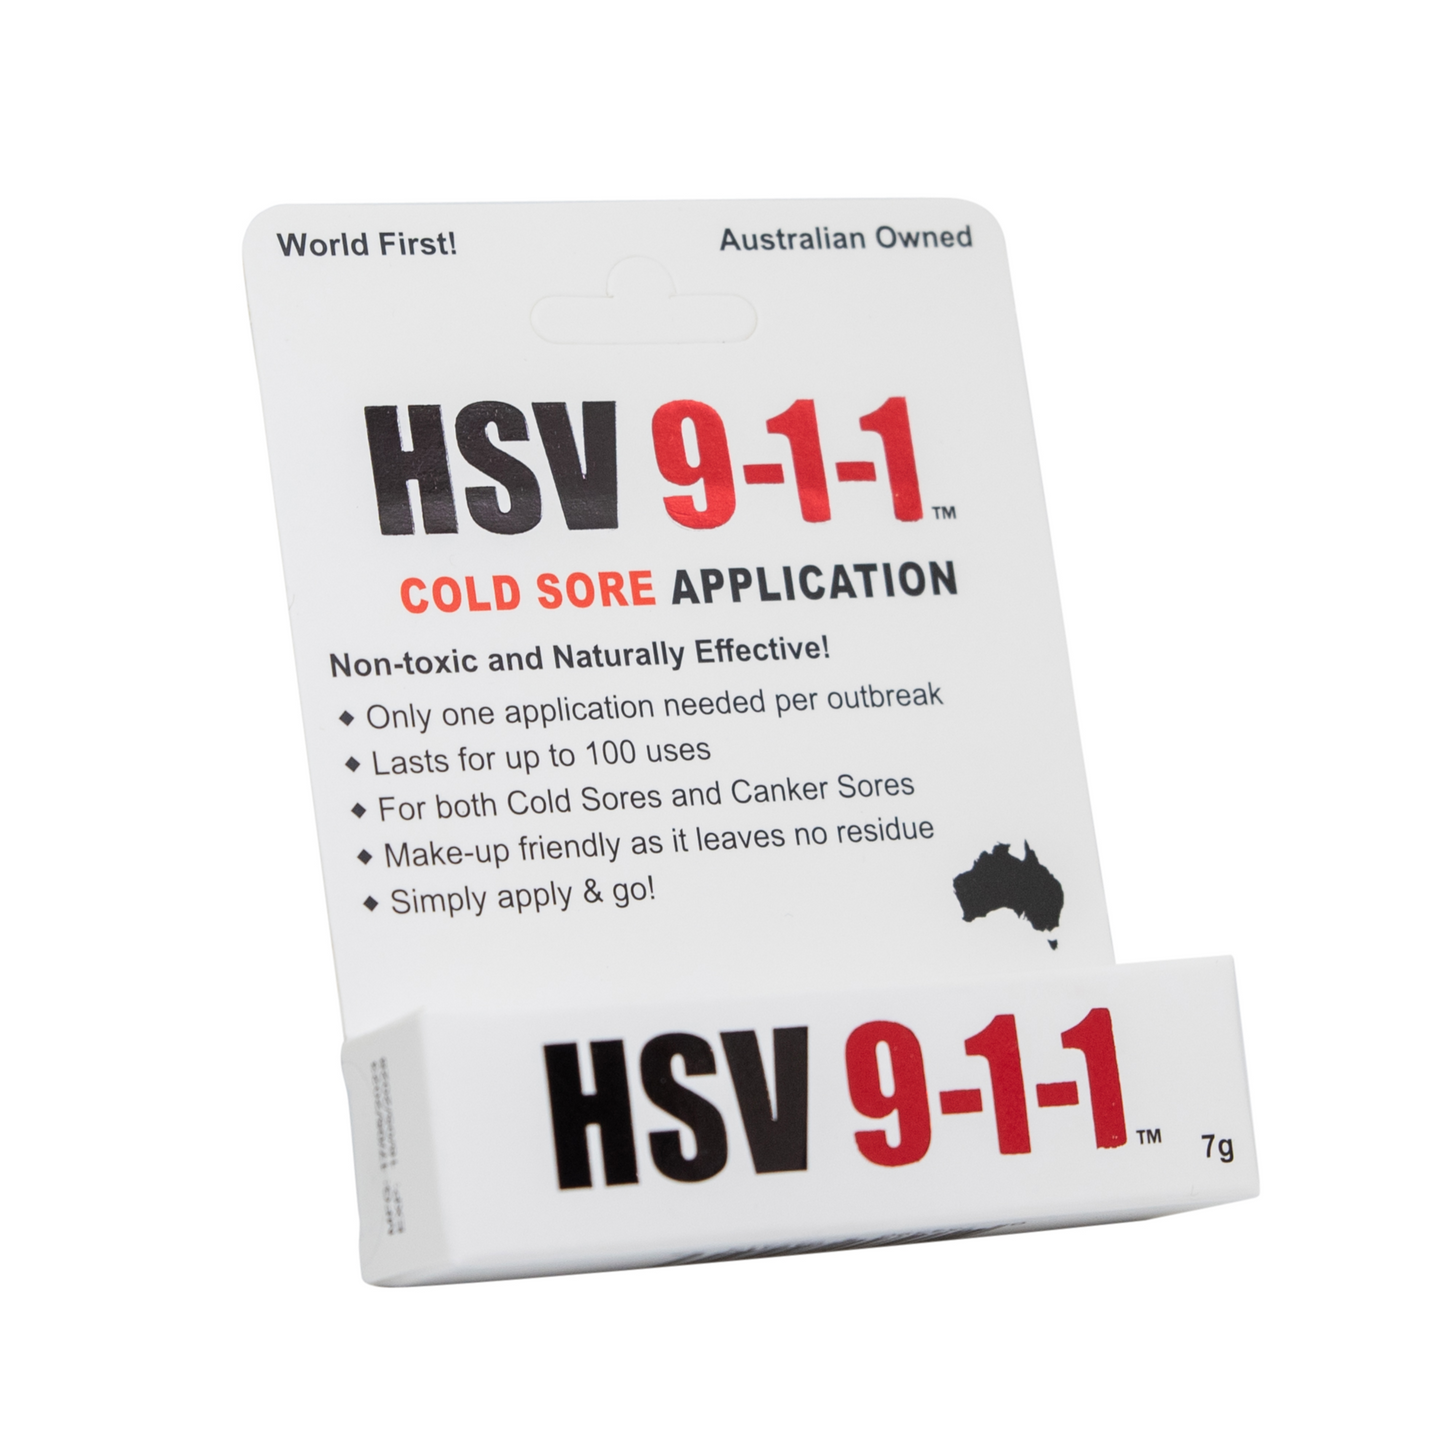 HSV 9-1-1 Cold Sore Application